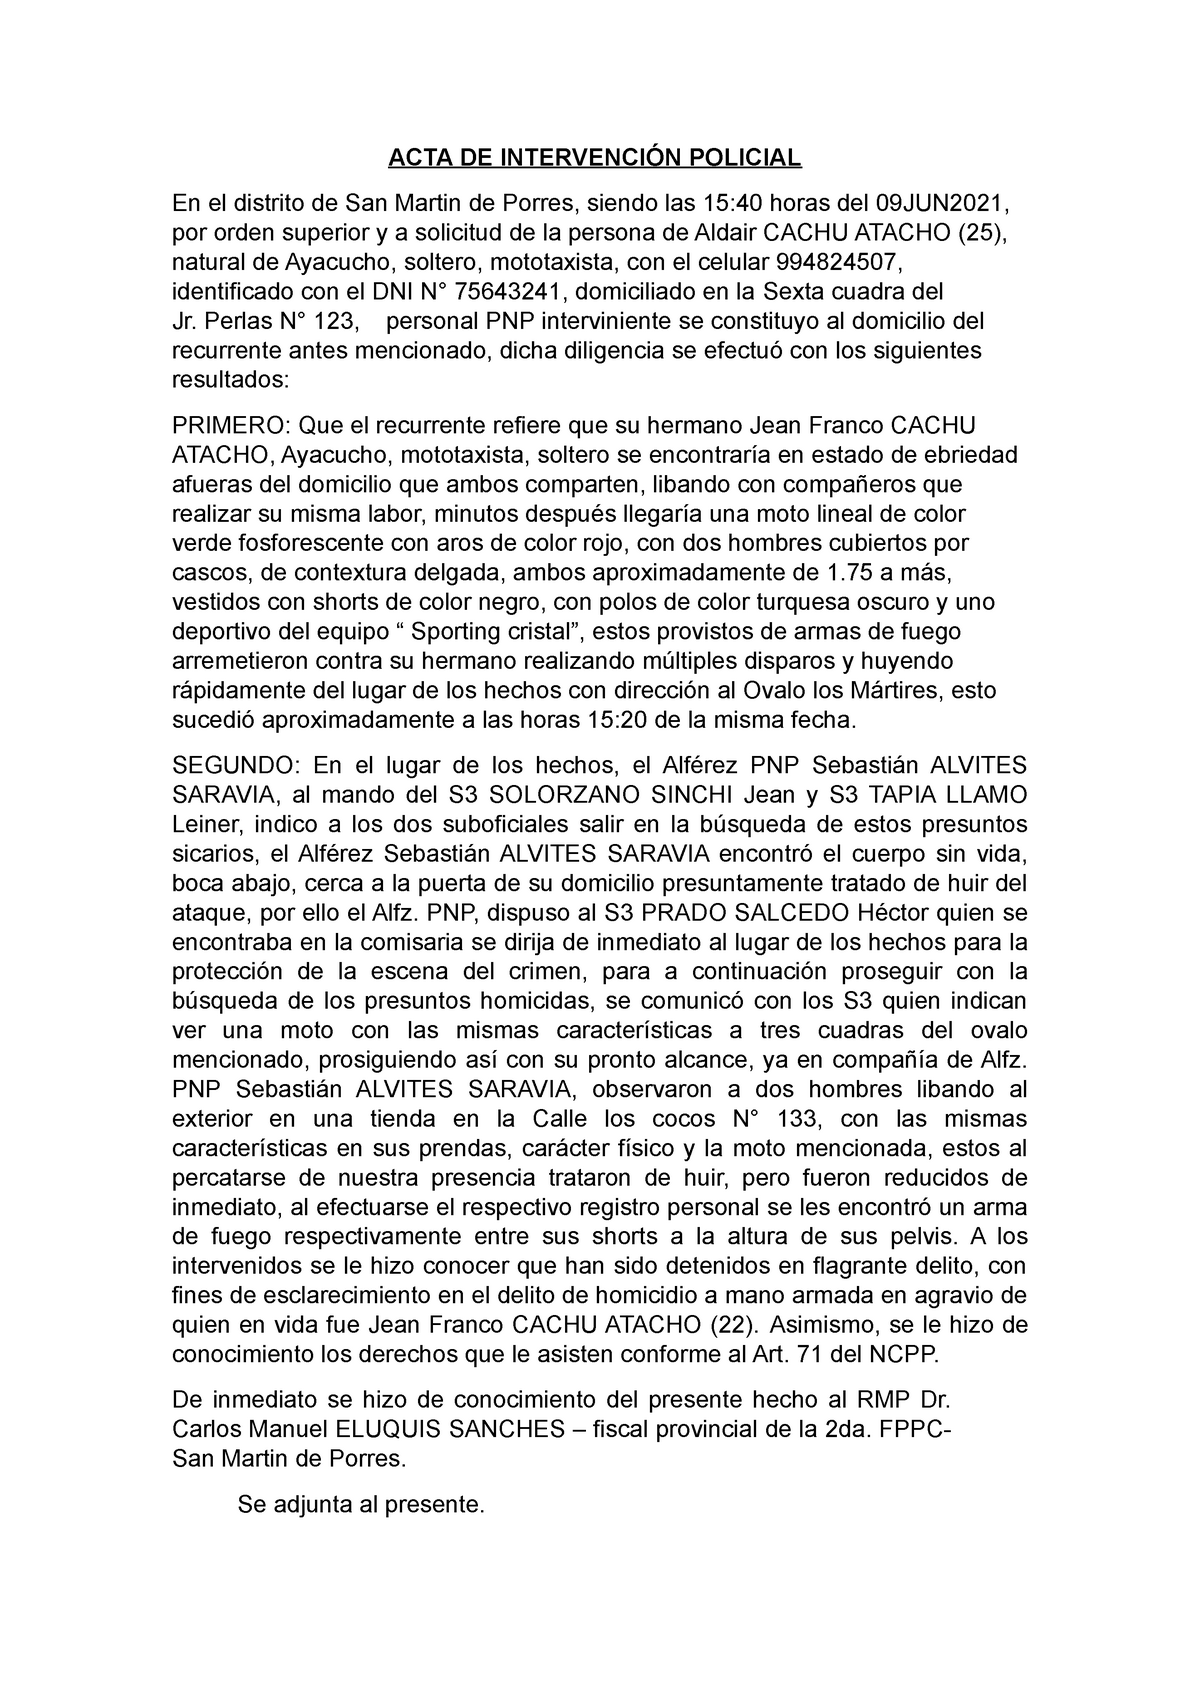 ACTA DE Intervencion Policial II - homicidio en flagrancia - ACTA DE  INTERVENCIÓN POLICIAL En el - Studocu